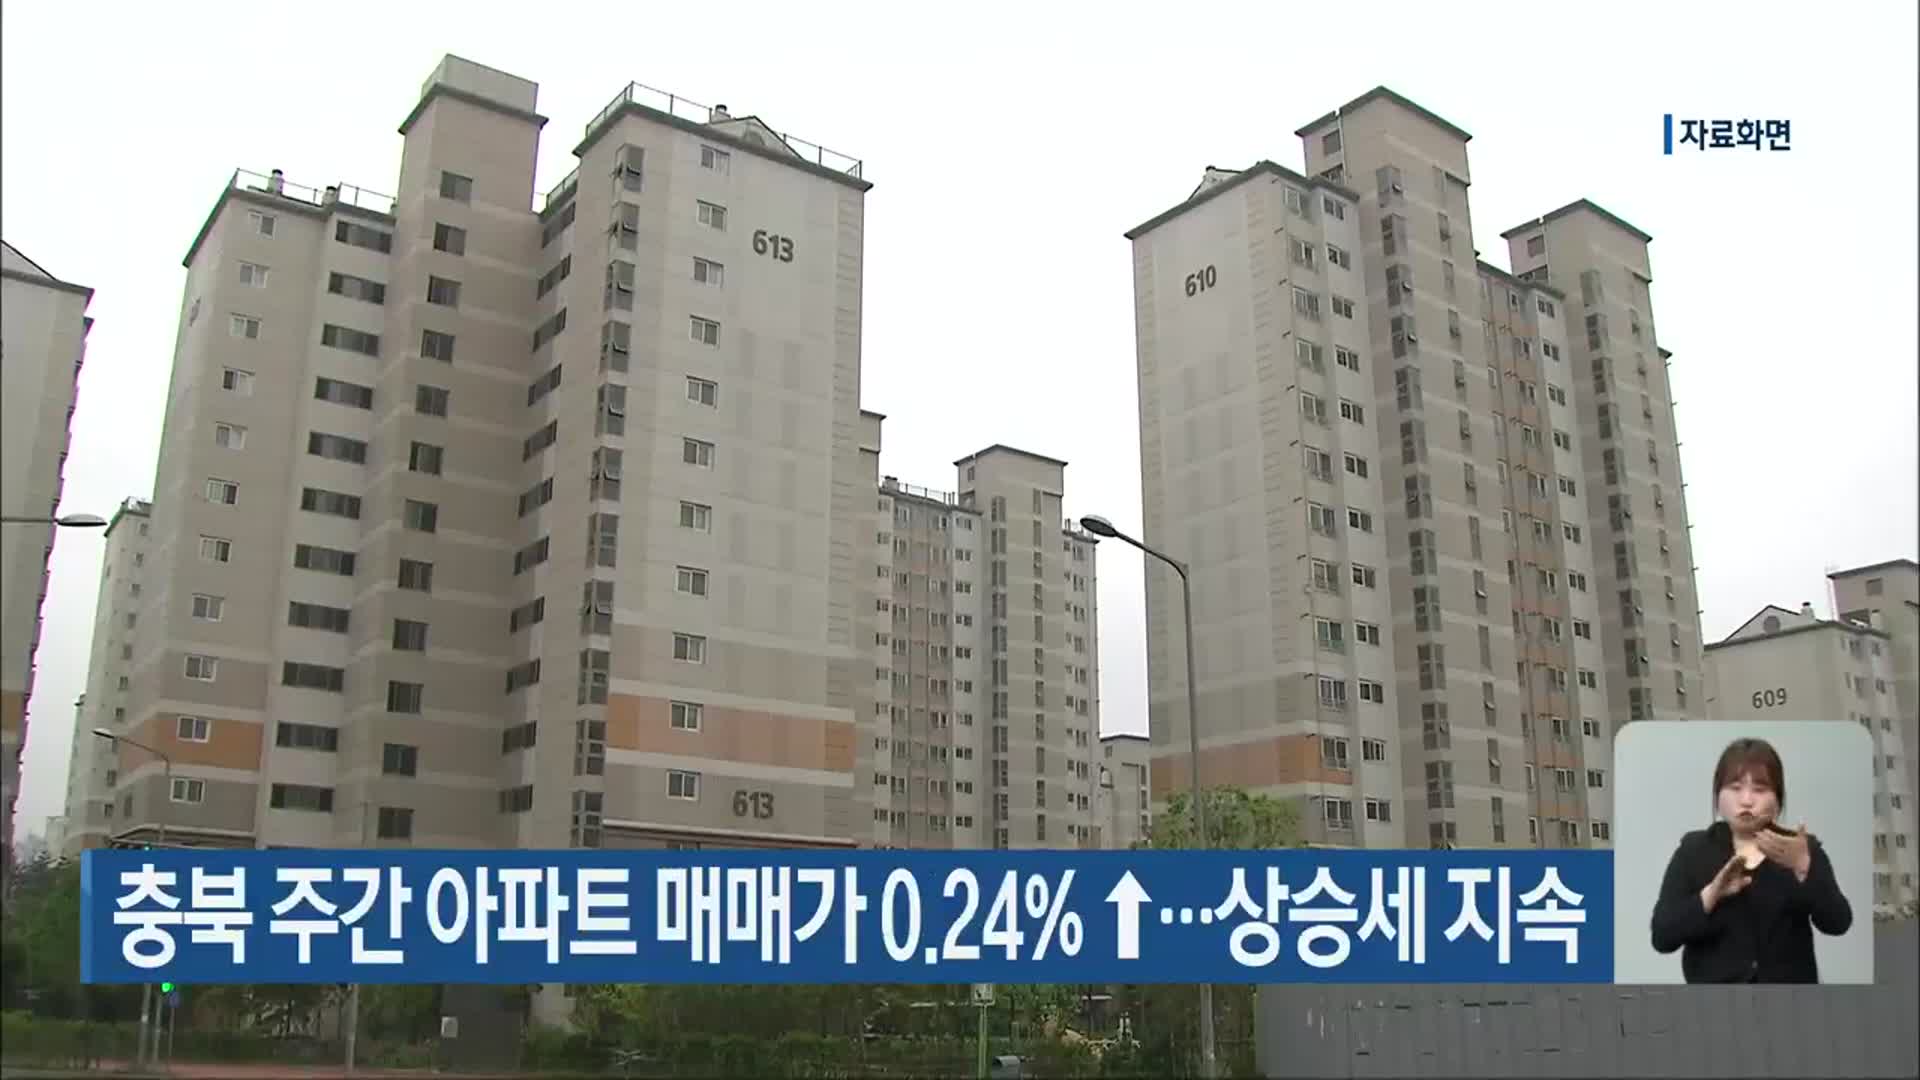 충북 주간 아파트 매매가 0.24%↑…상승세 지속